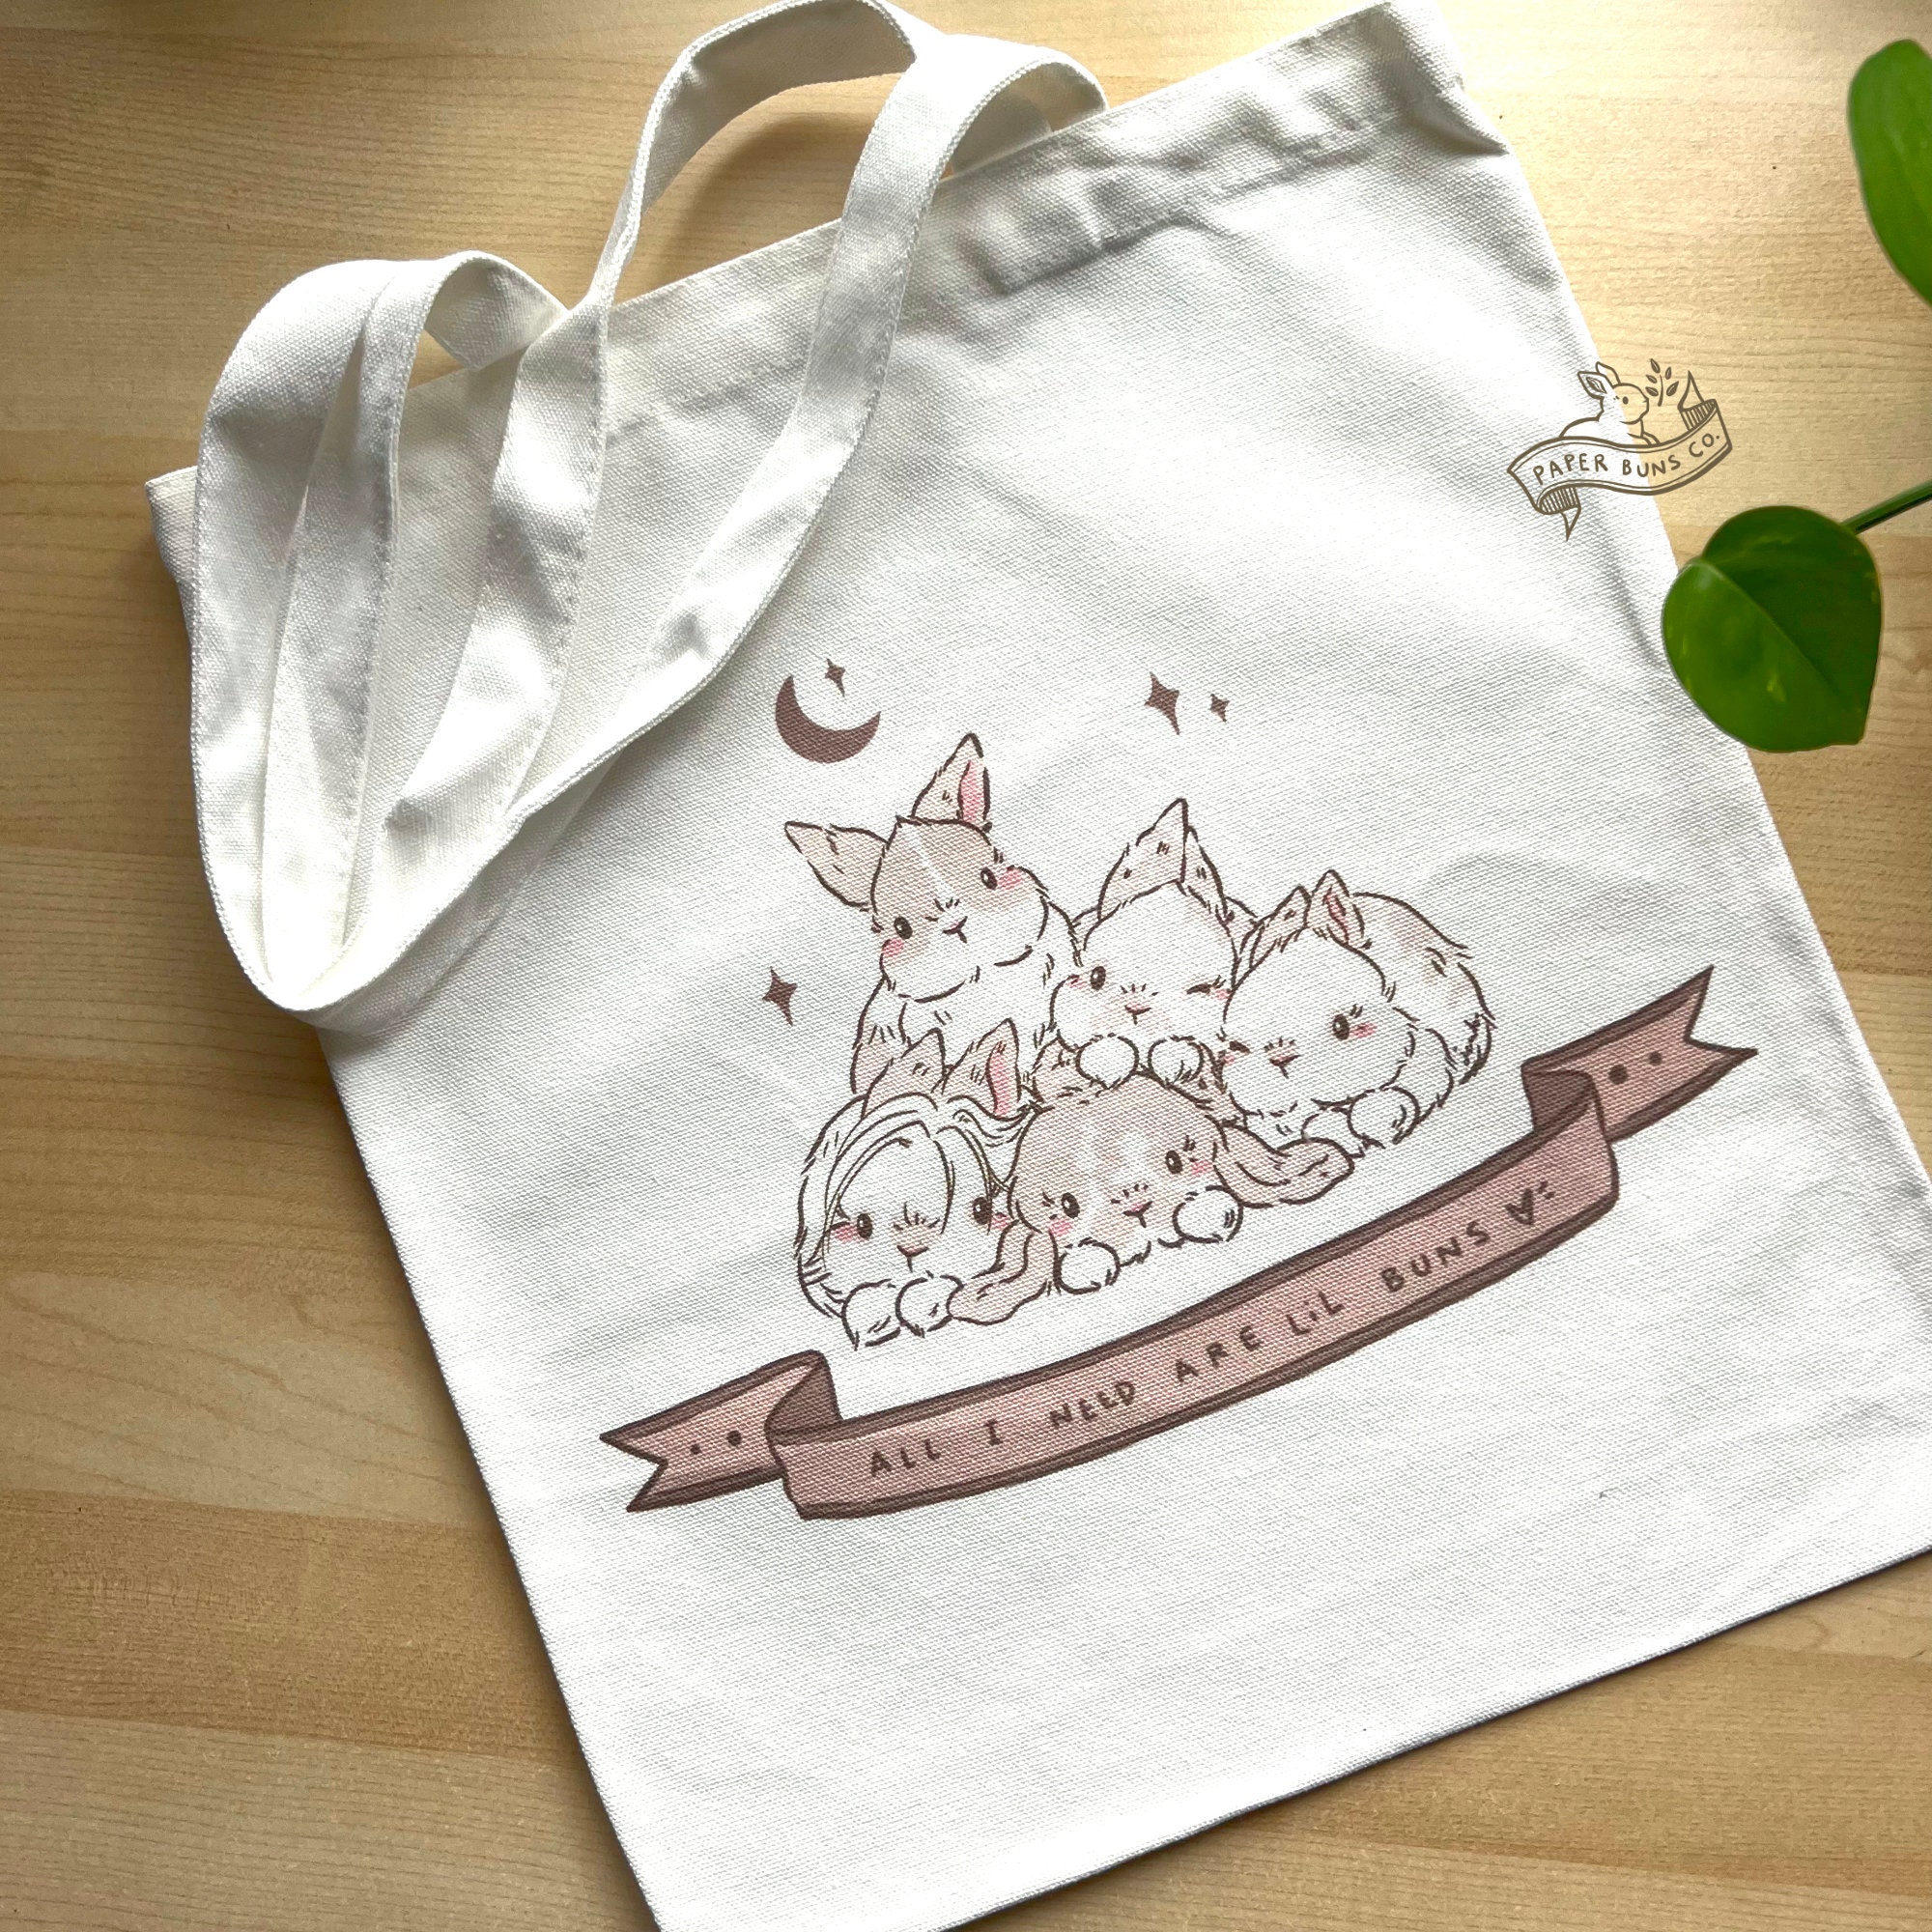 Cute Bunny Sequins Shoulder Bag, Cartoon Crochet Tote Bag, Kawaii